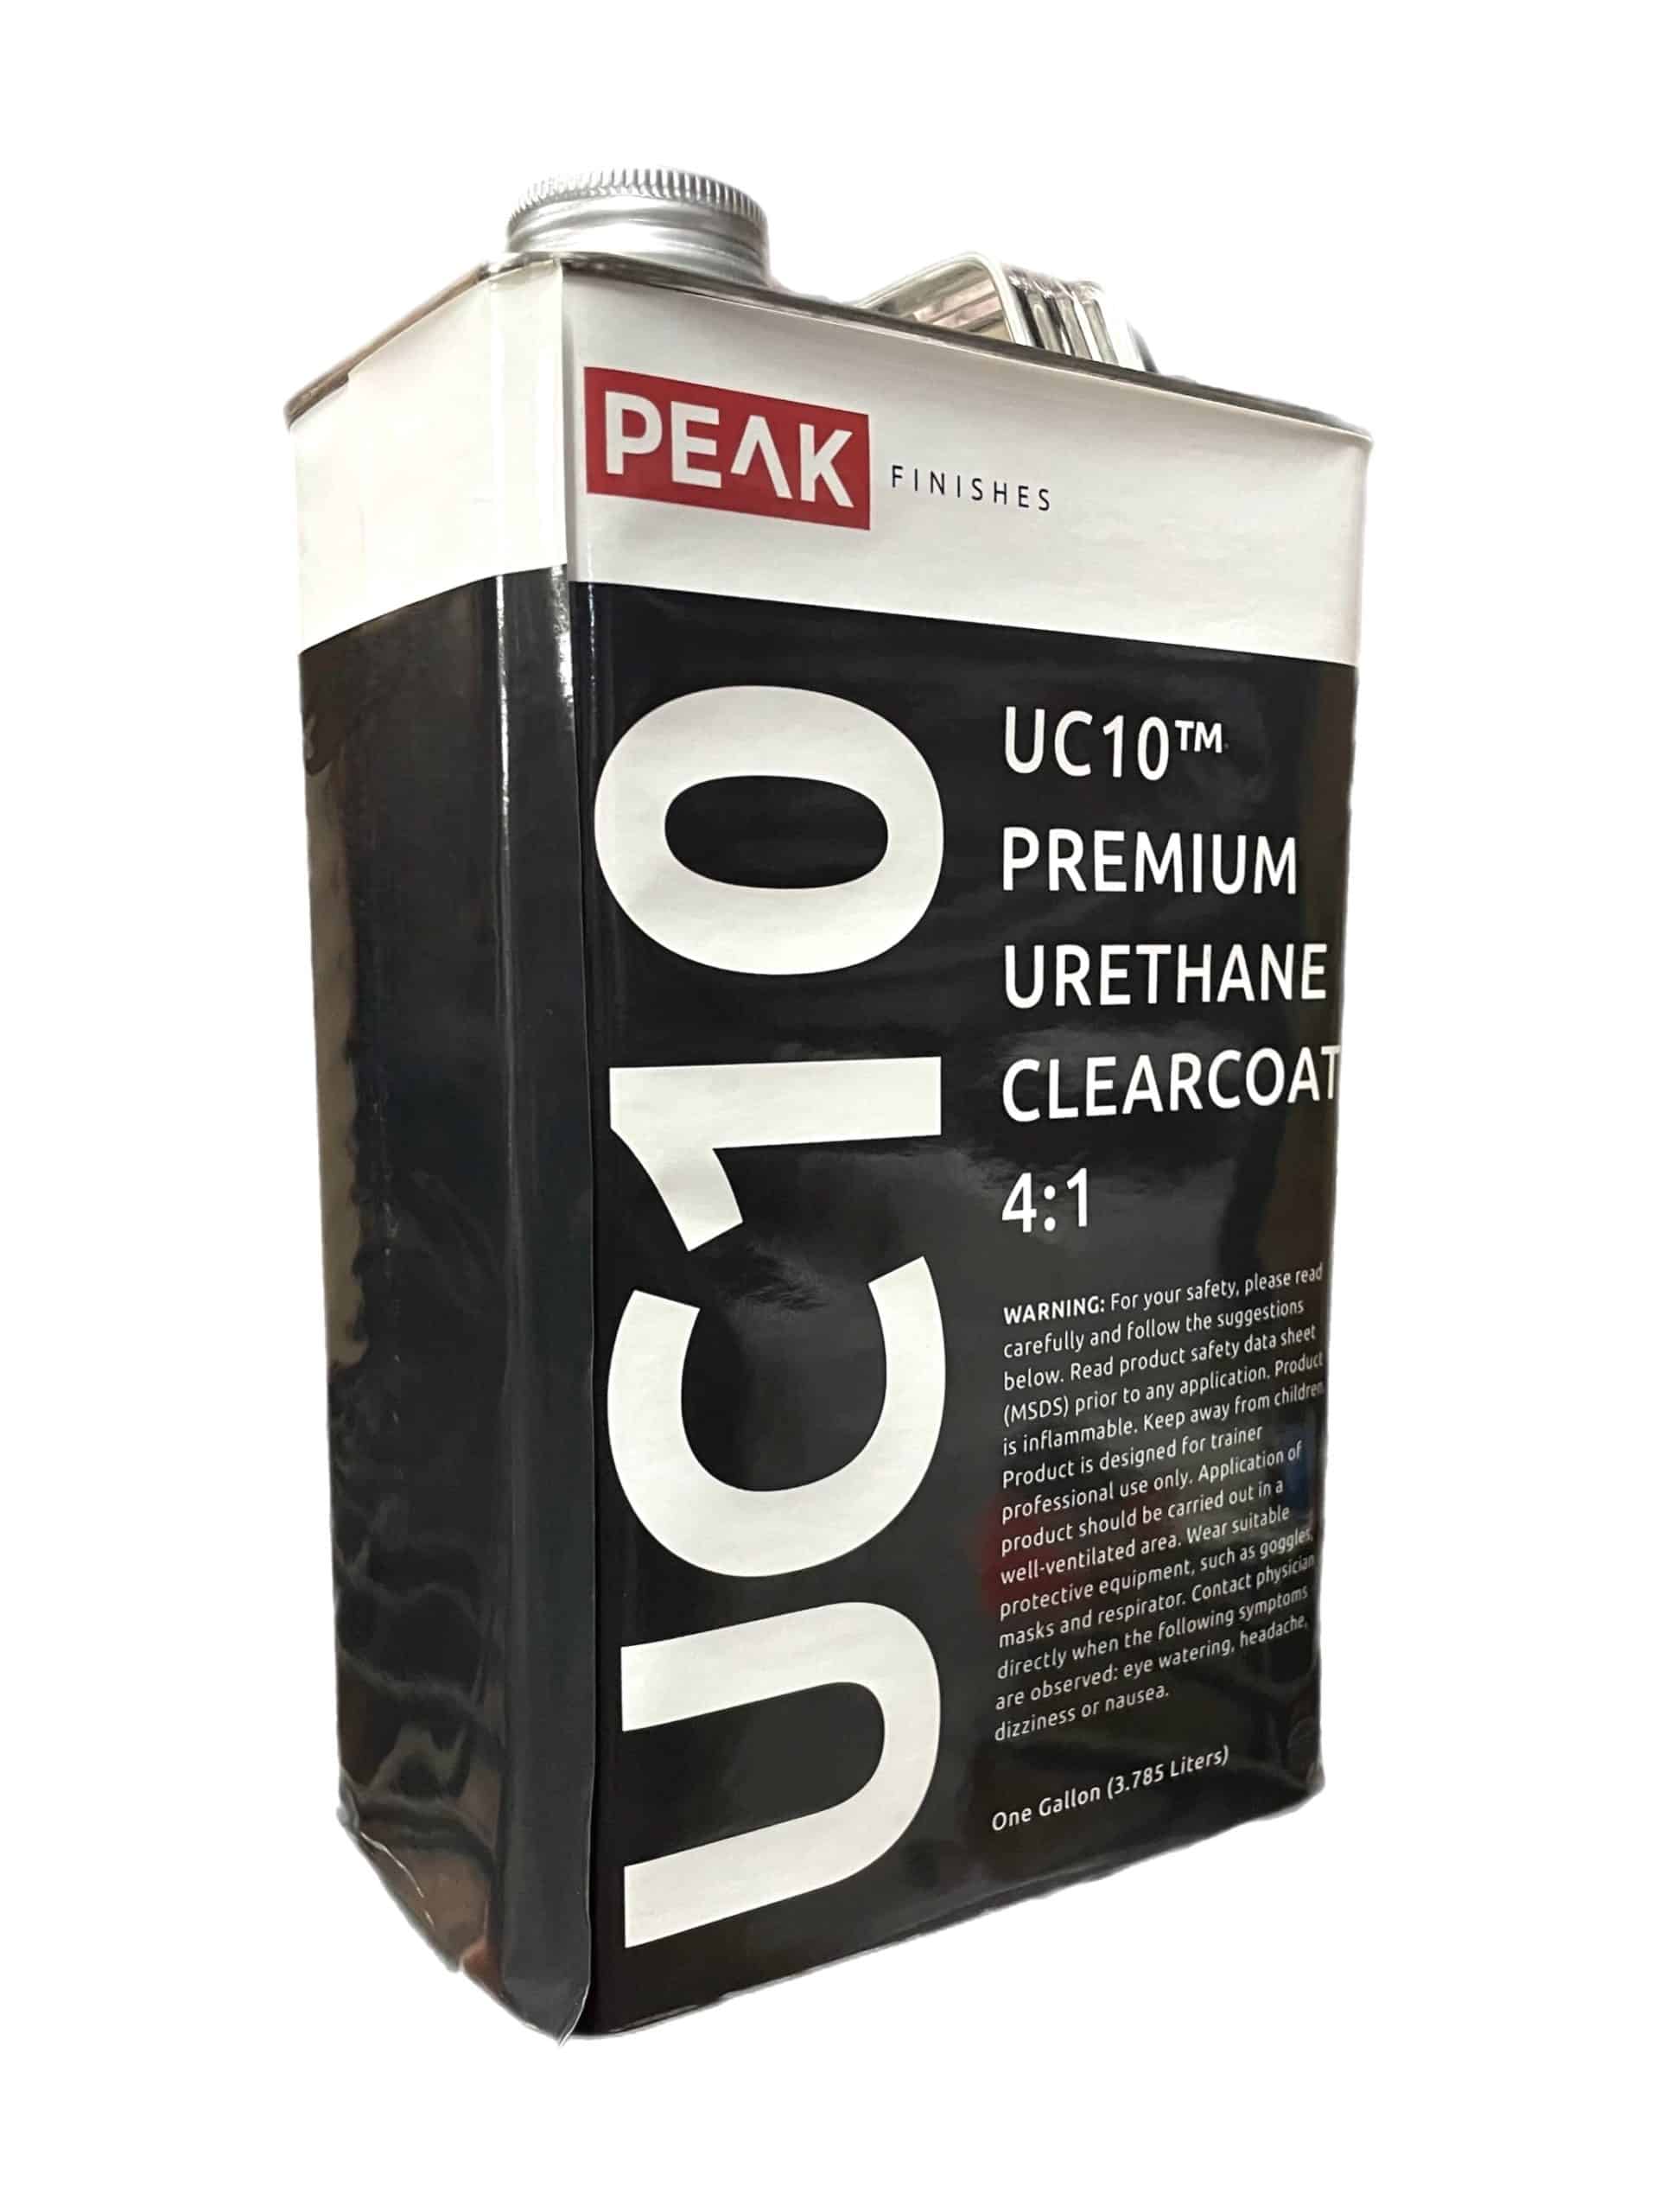 Urethane Clear Coat Sem 50504 Quart Kit restoration car paint